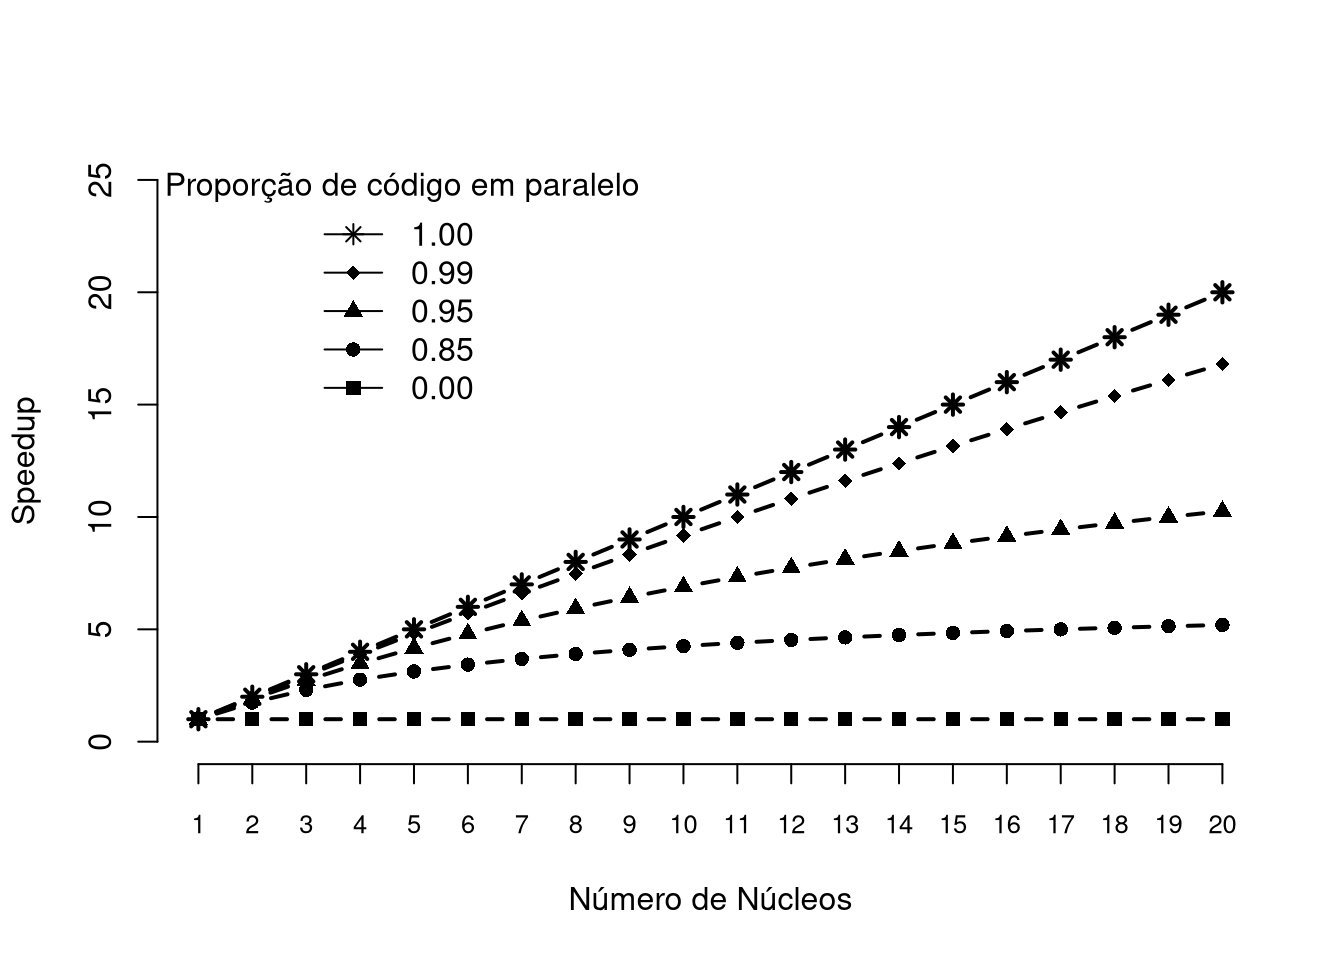 Speedup estimado utilizando a Lei de Amdhal levando em consideração a quantidade de núcleos disponiveis e a proporção de código passível de paralelização de um algoritmo.